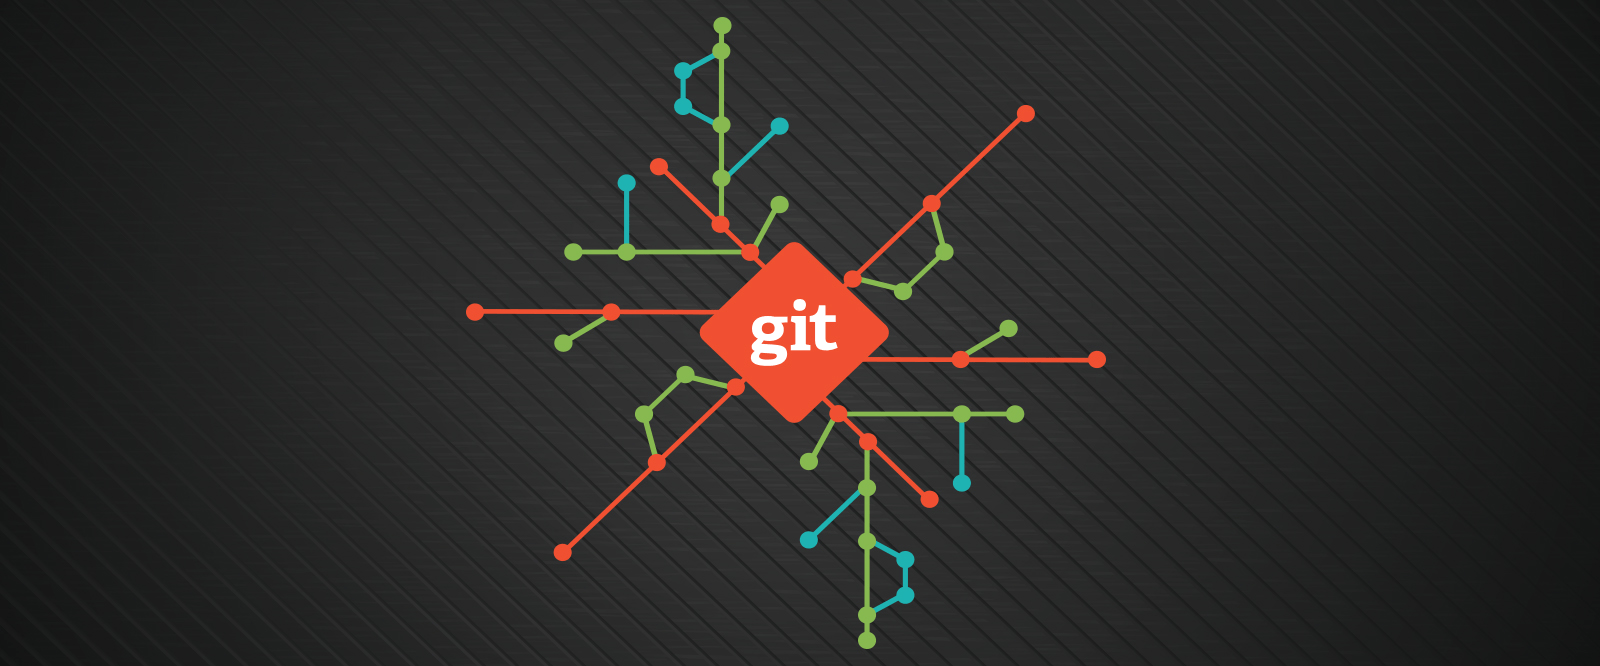 Git init là lệnh gì và tác dụng của nó trong Git là gì?
